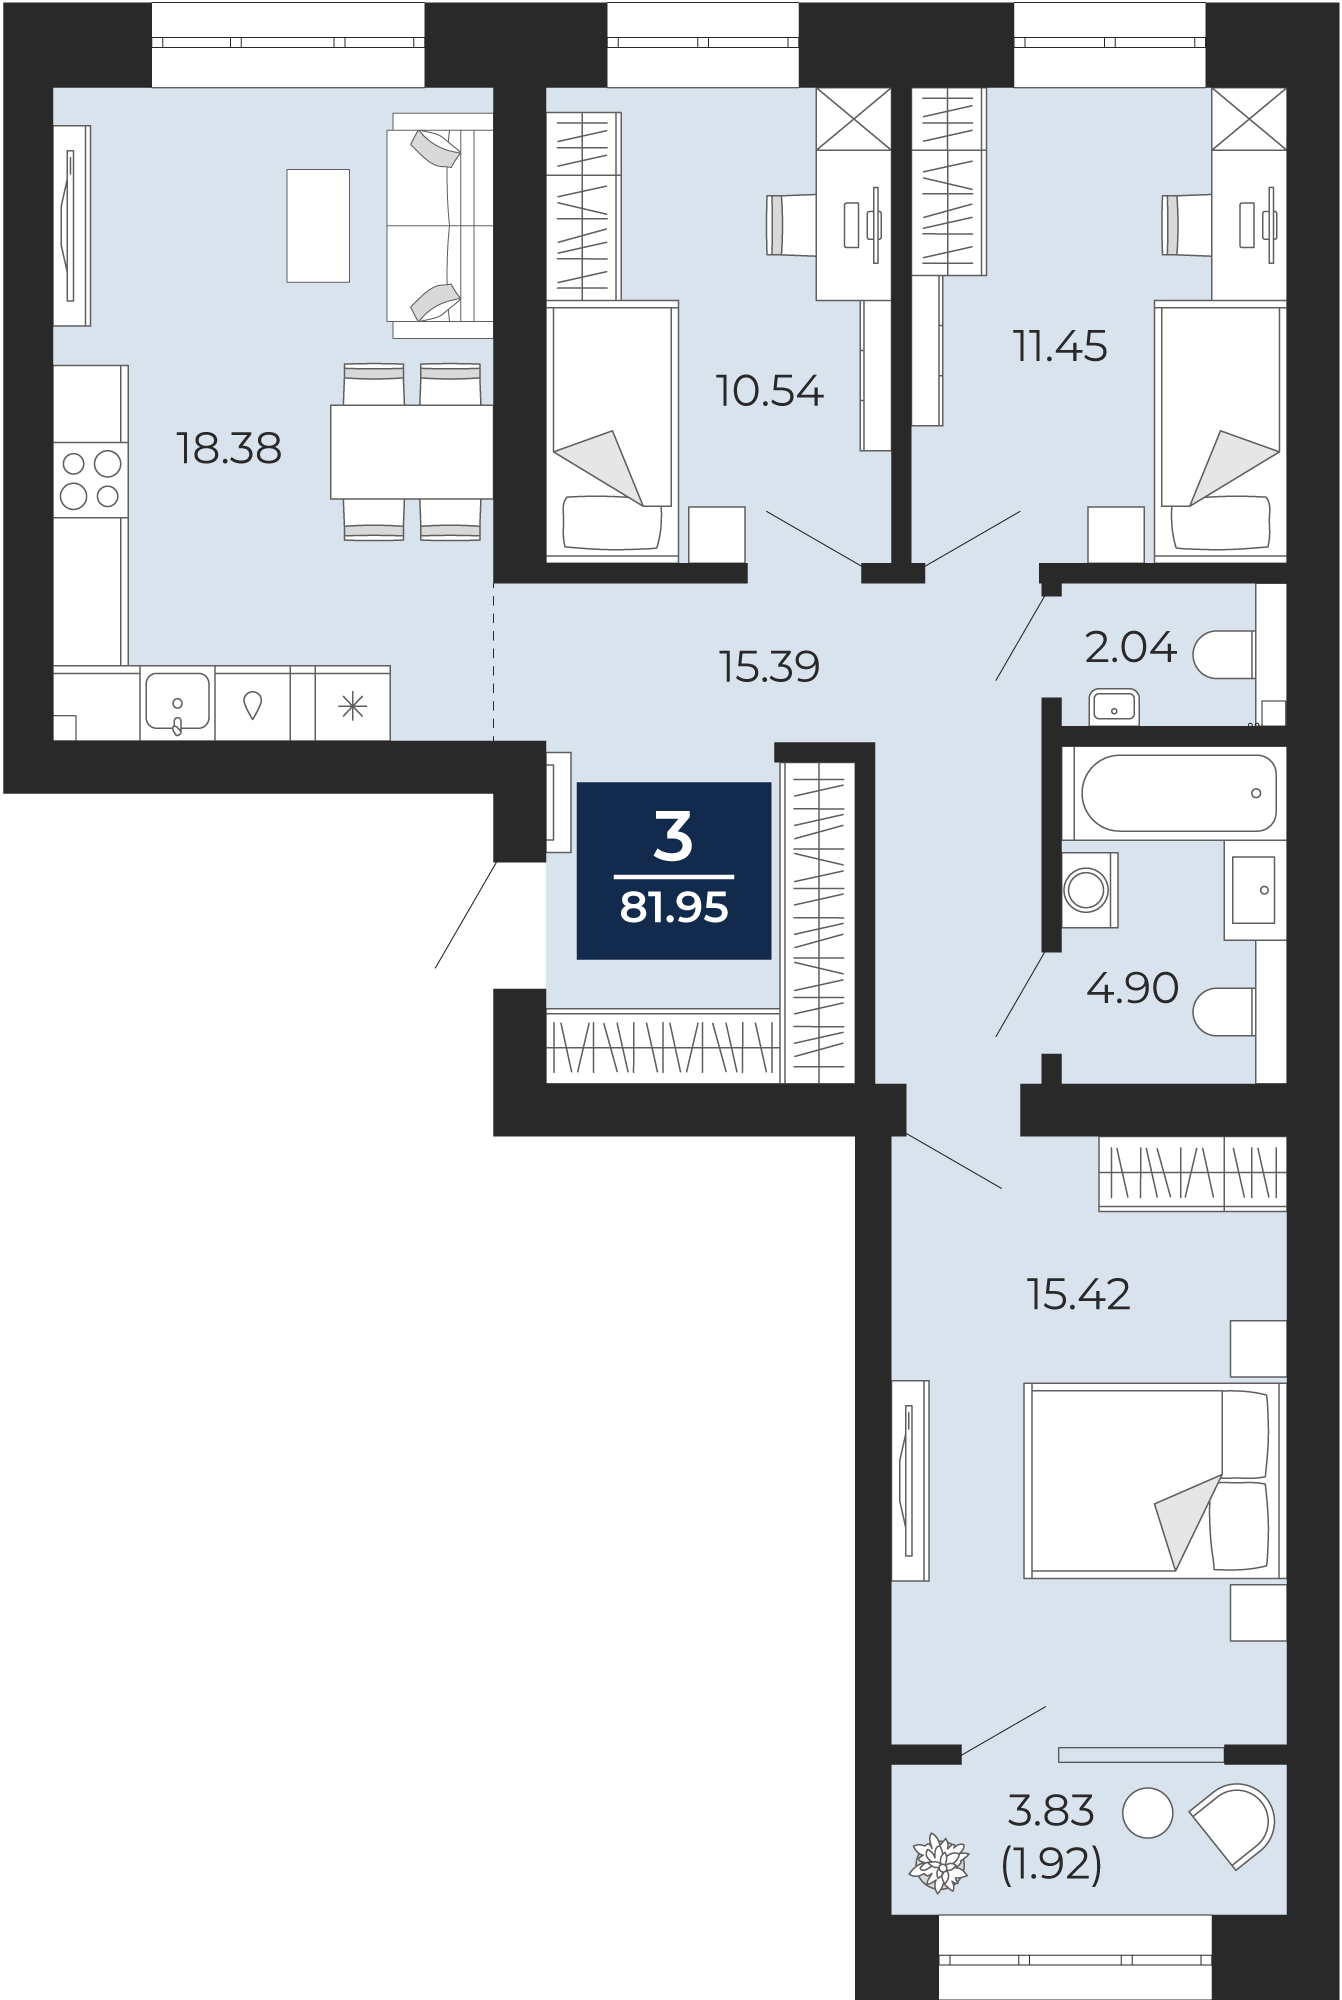 Квартира № 96, 3-комнатная, 81.95 кв. м, 3 этаж